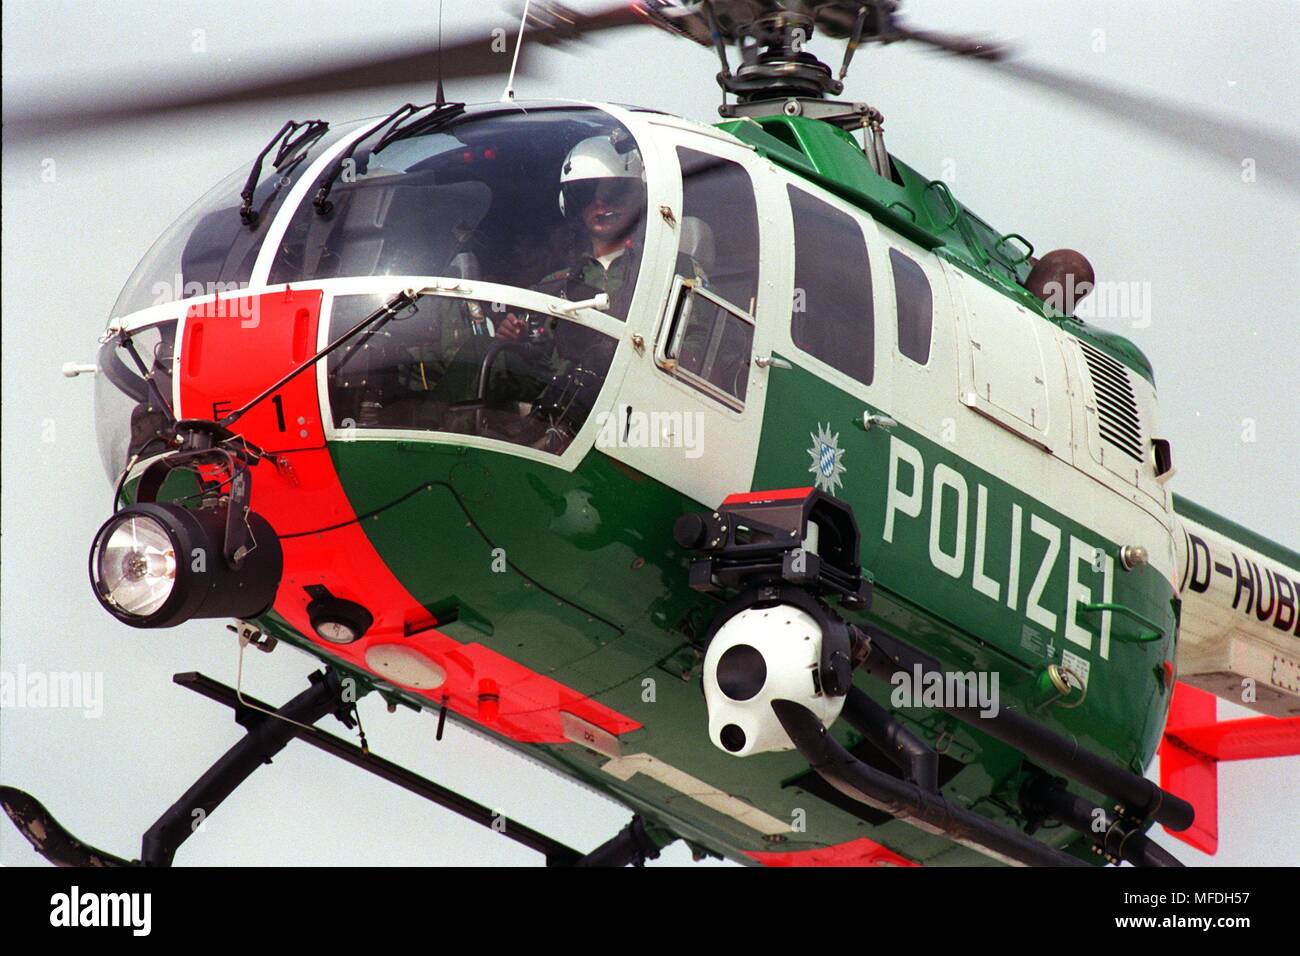 Mit Hilfe eines warmen - Bild Kamera (unten), der Bayerischen'Edelweiss 1' Helikopter können auch die Verbrecher der Bayerischen Bereitschaftspolizei. Der große weiße Kugel, gekühlt, bis auf minus 180 Grad, können zwischen bis zu zwei Kilometer entfernt heiße und kalte unterscheiden und damit über eine ausgerichtete Gangster in den Wald. Unter der Kanzel der Hubschrauber gibt es auch einen Suchscheinwerfer befestigt. Die mehrere 100.000 DM teuren, einzigartig in Deutschland, seit etwa einem halben Jahr, bereits beträchtliche Suche Erfolge möglich. | Verwendung weltweit Stockfoto